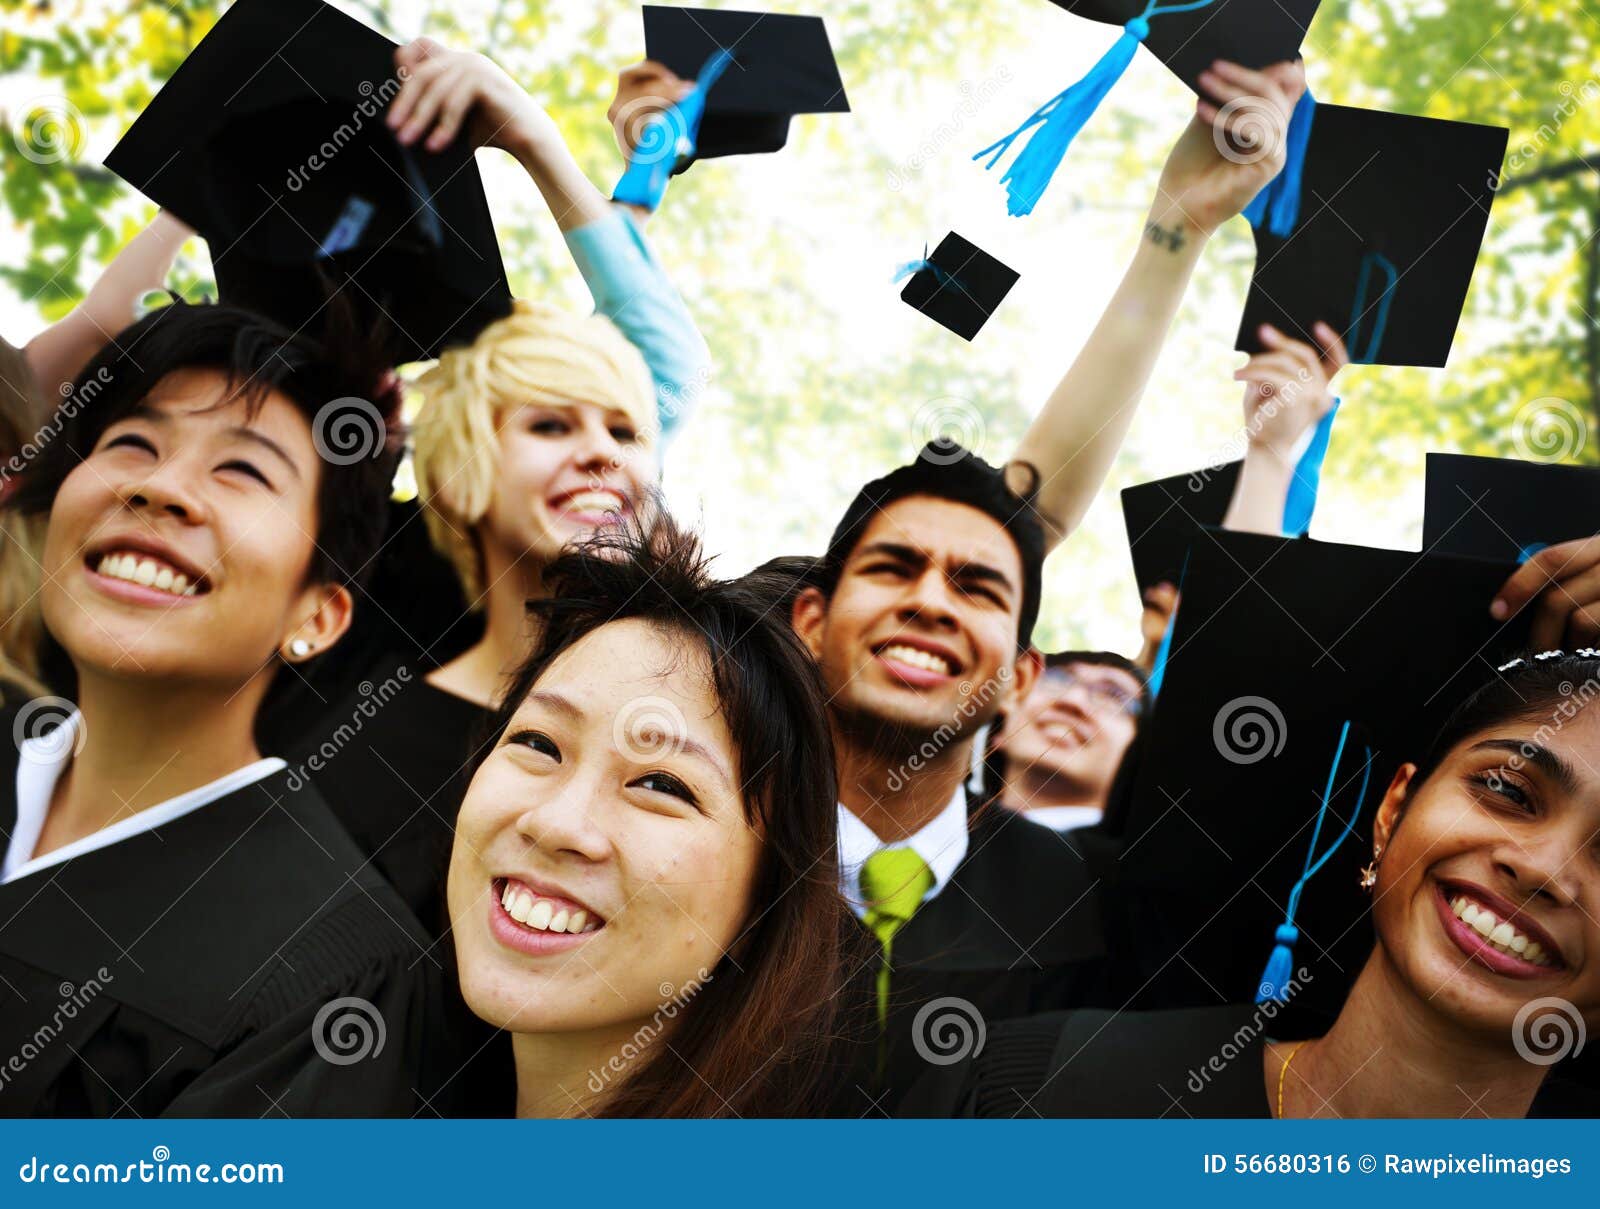 graduation student commencement university degree concept